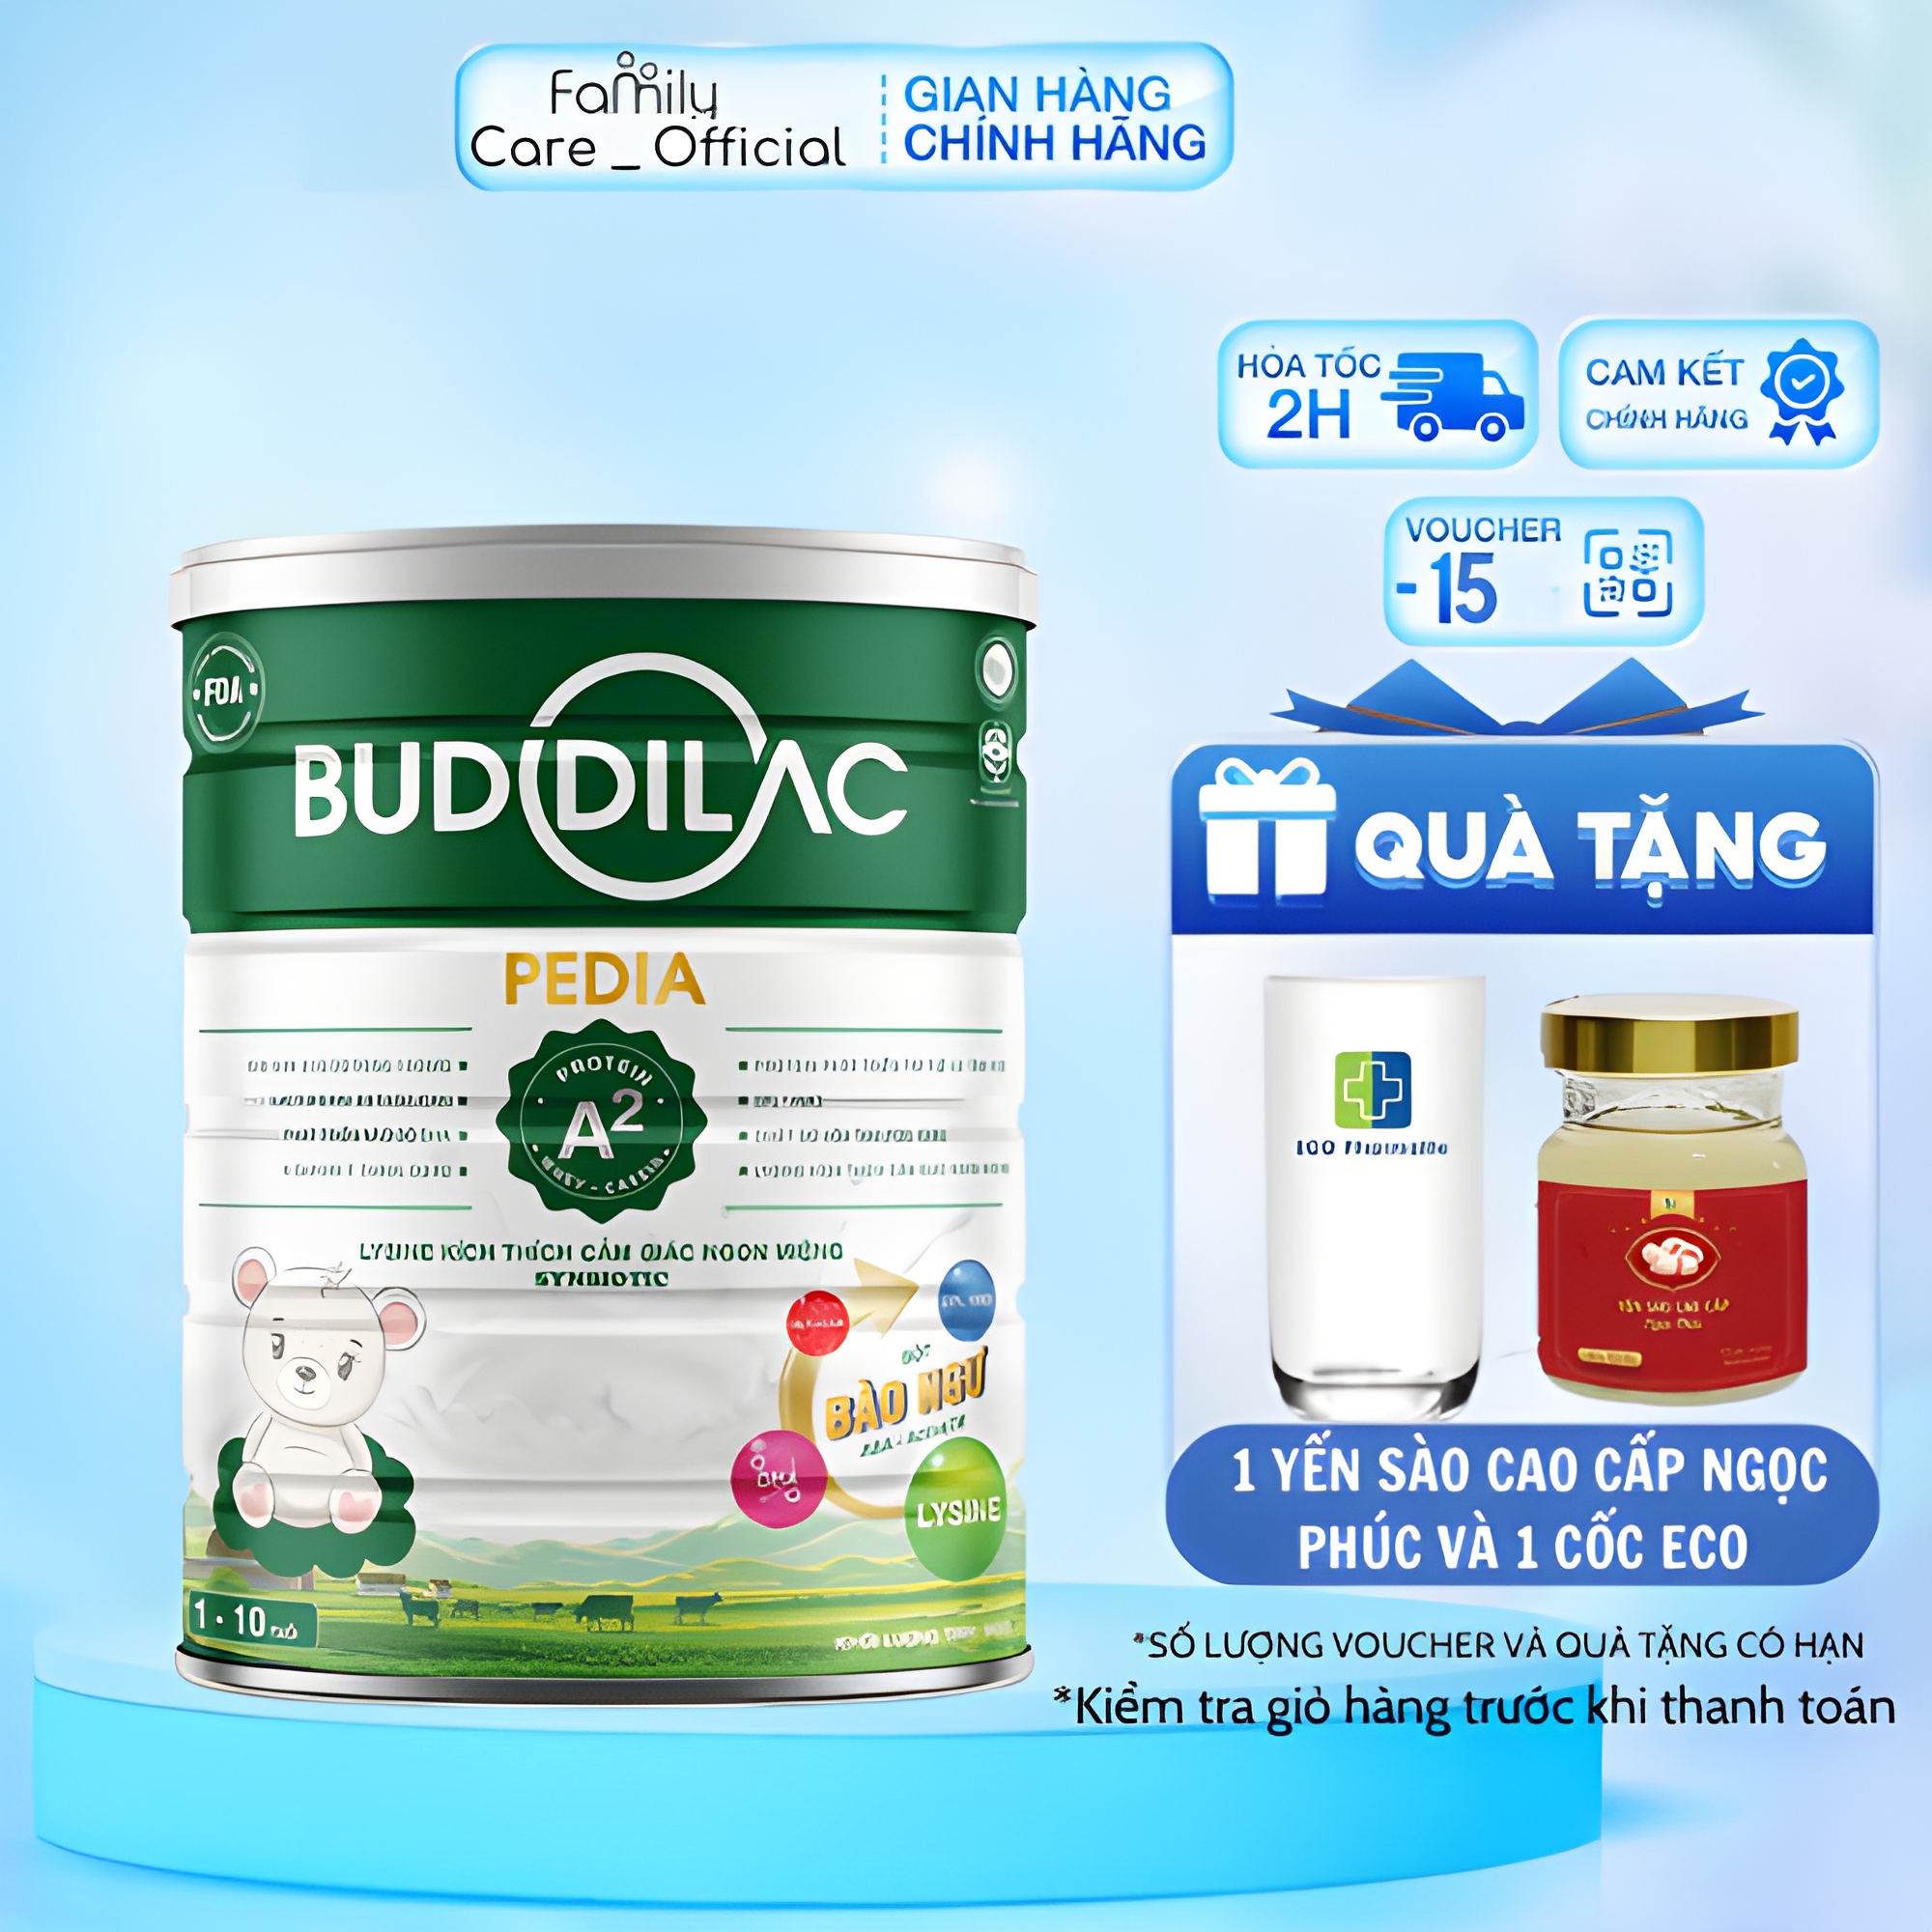 Sữa bột Buddilac Pedia giúp bé ăn ngon, tăng cân, phát triển toàn diện